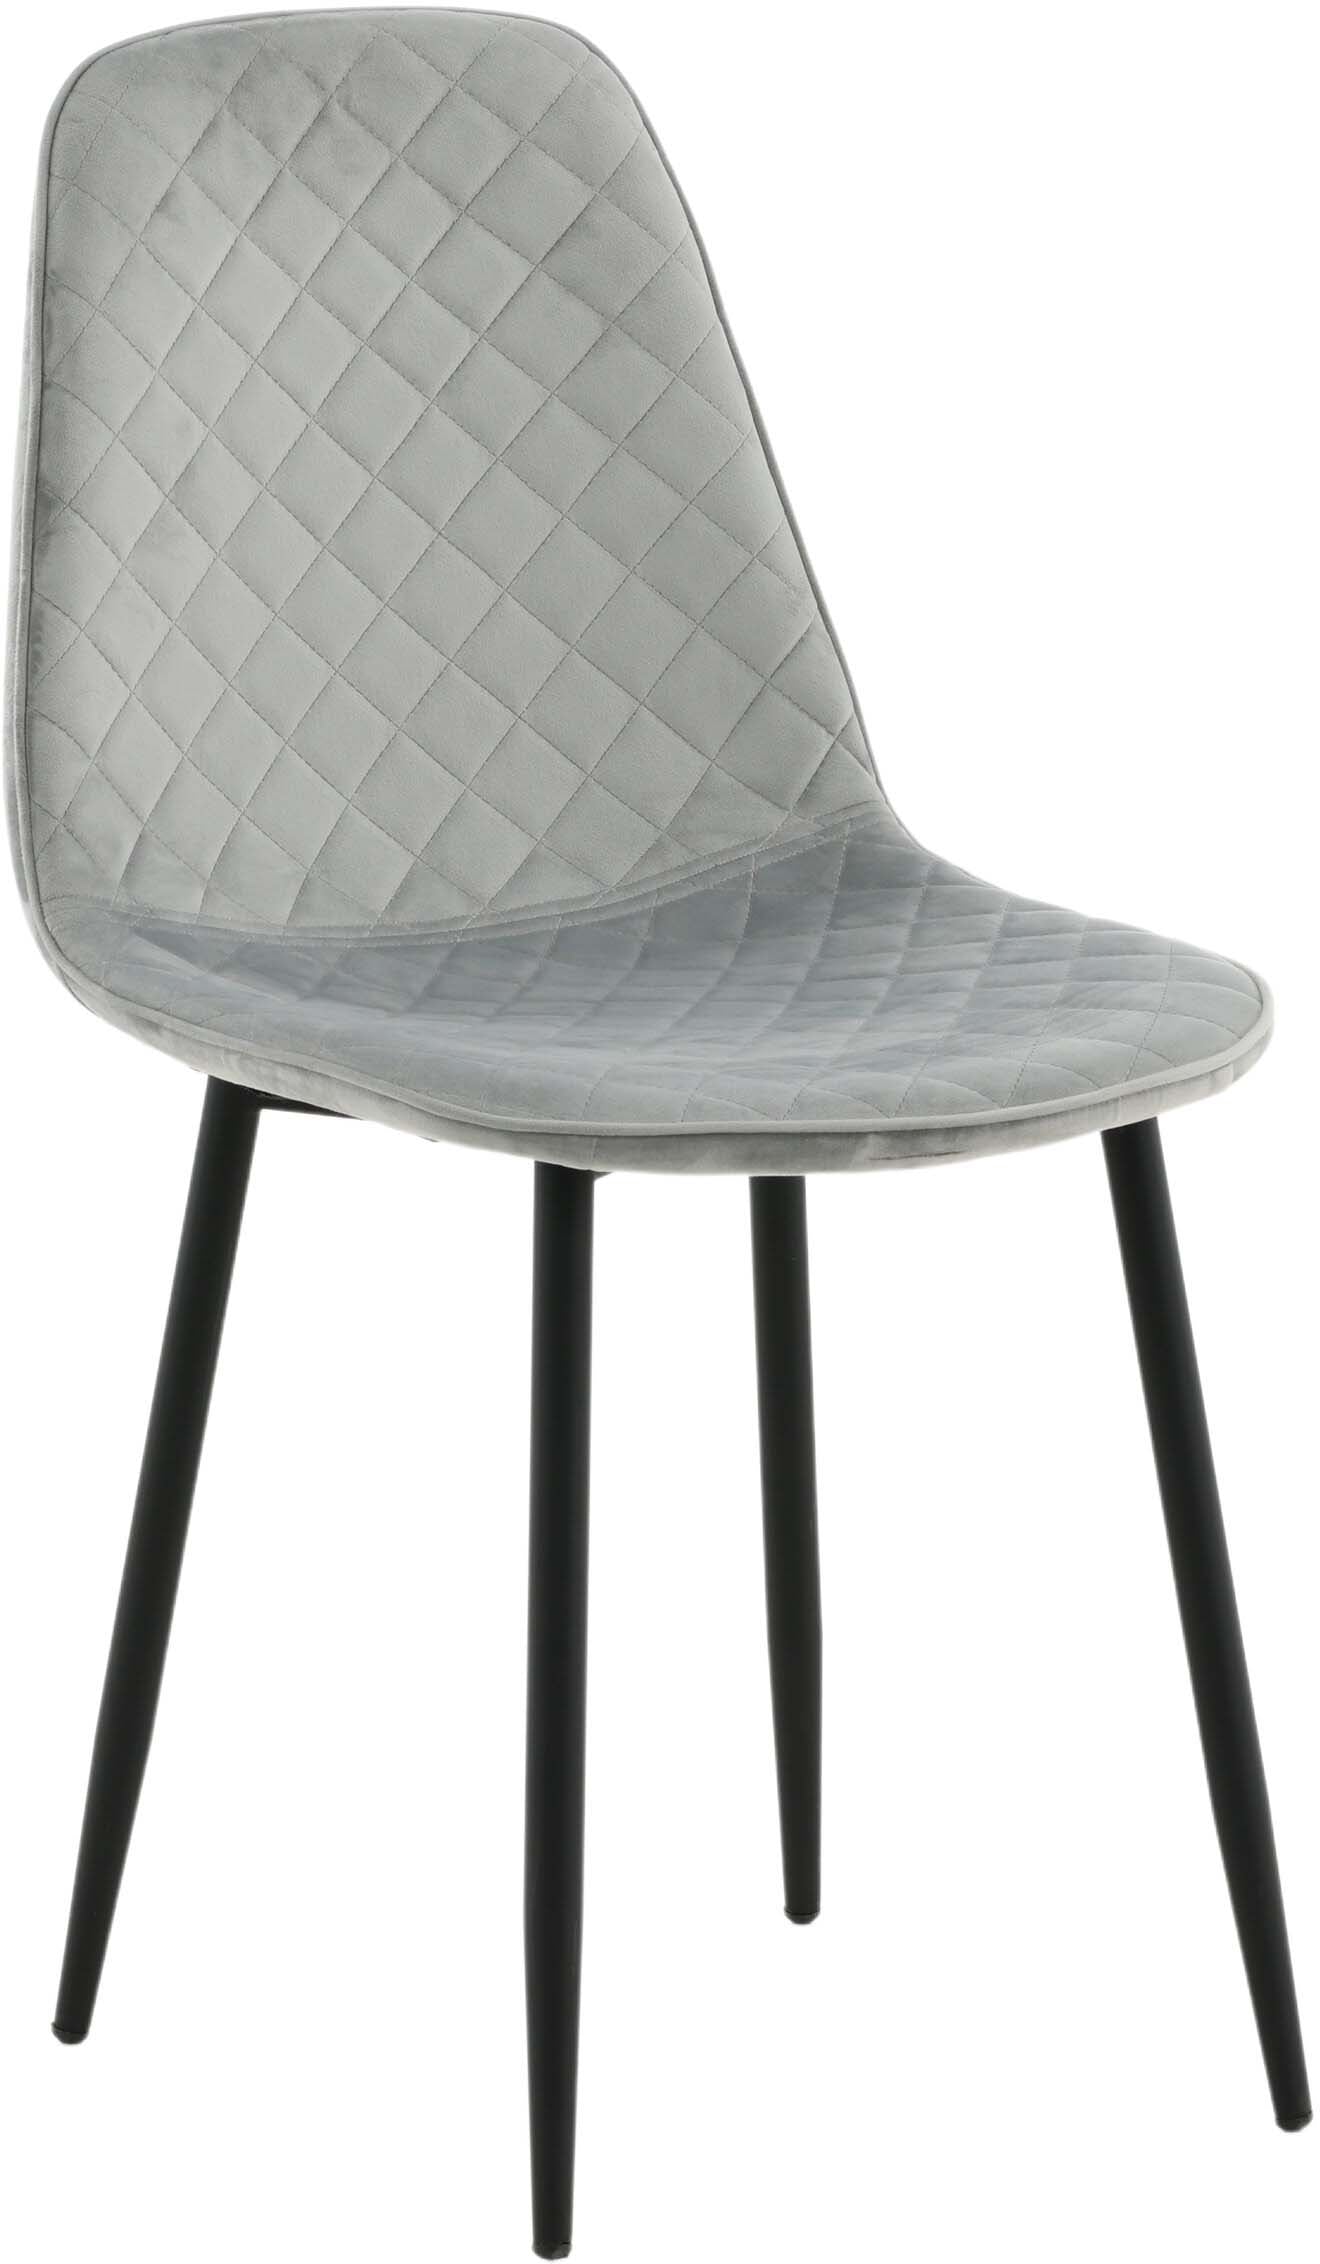 Polar Diamond Stuhl in Grau/Schwarz präsentiert im Onlineshop von KAQTU Design AG. Stuhl ist von Venture Home